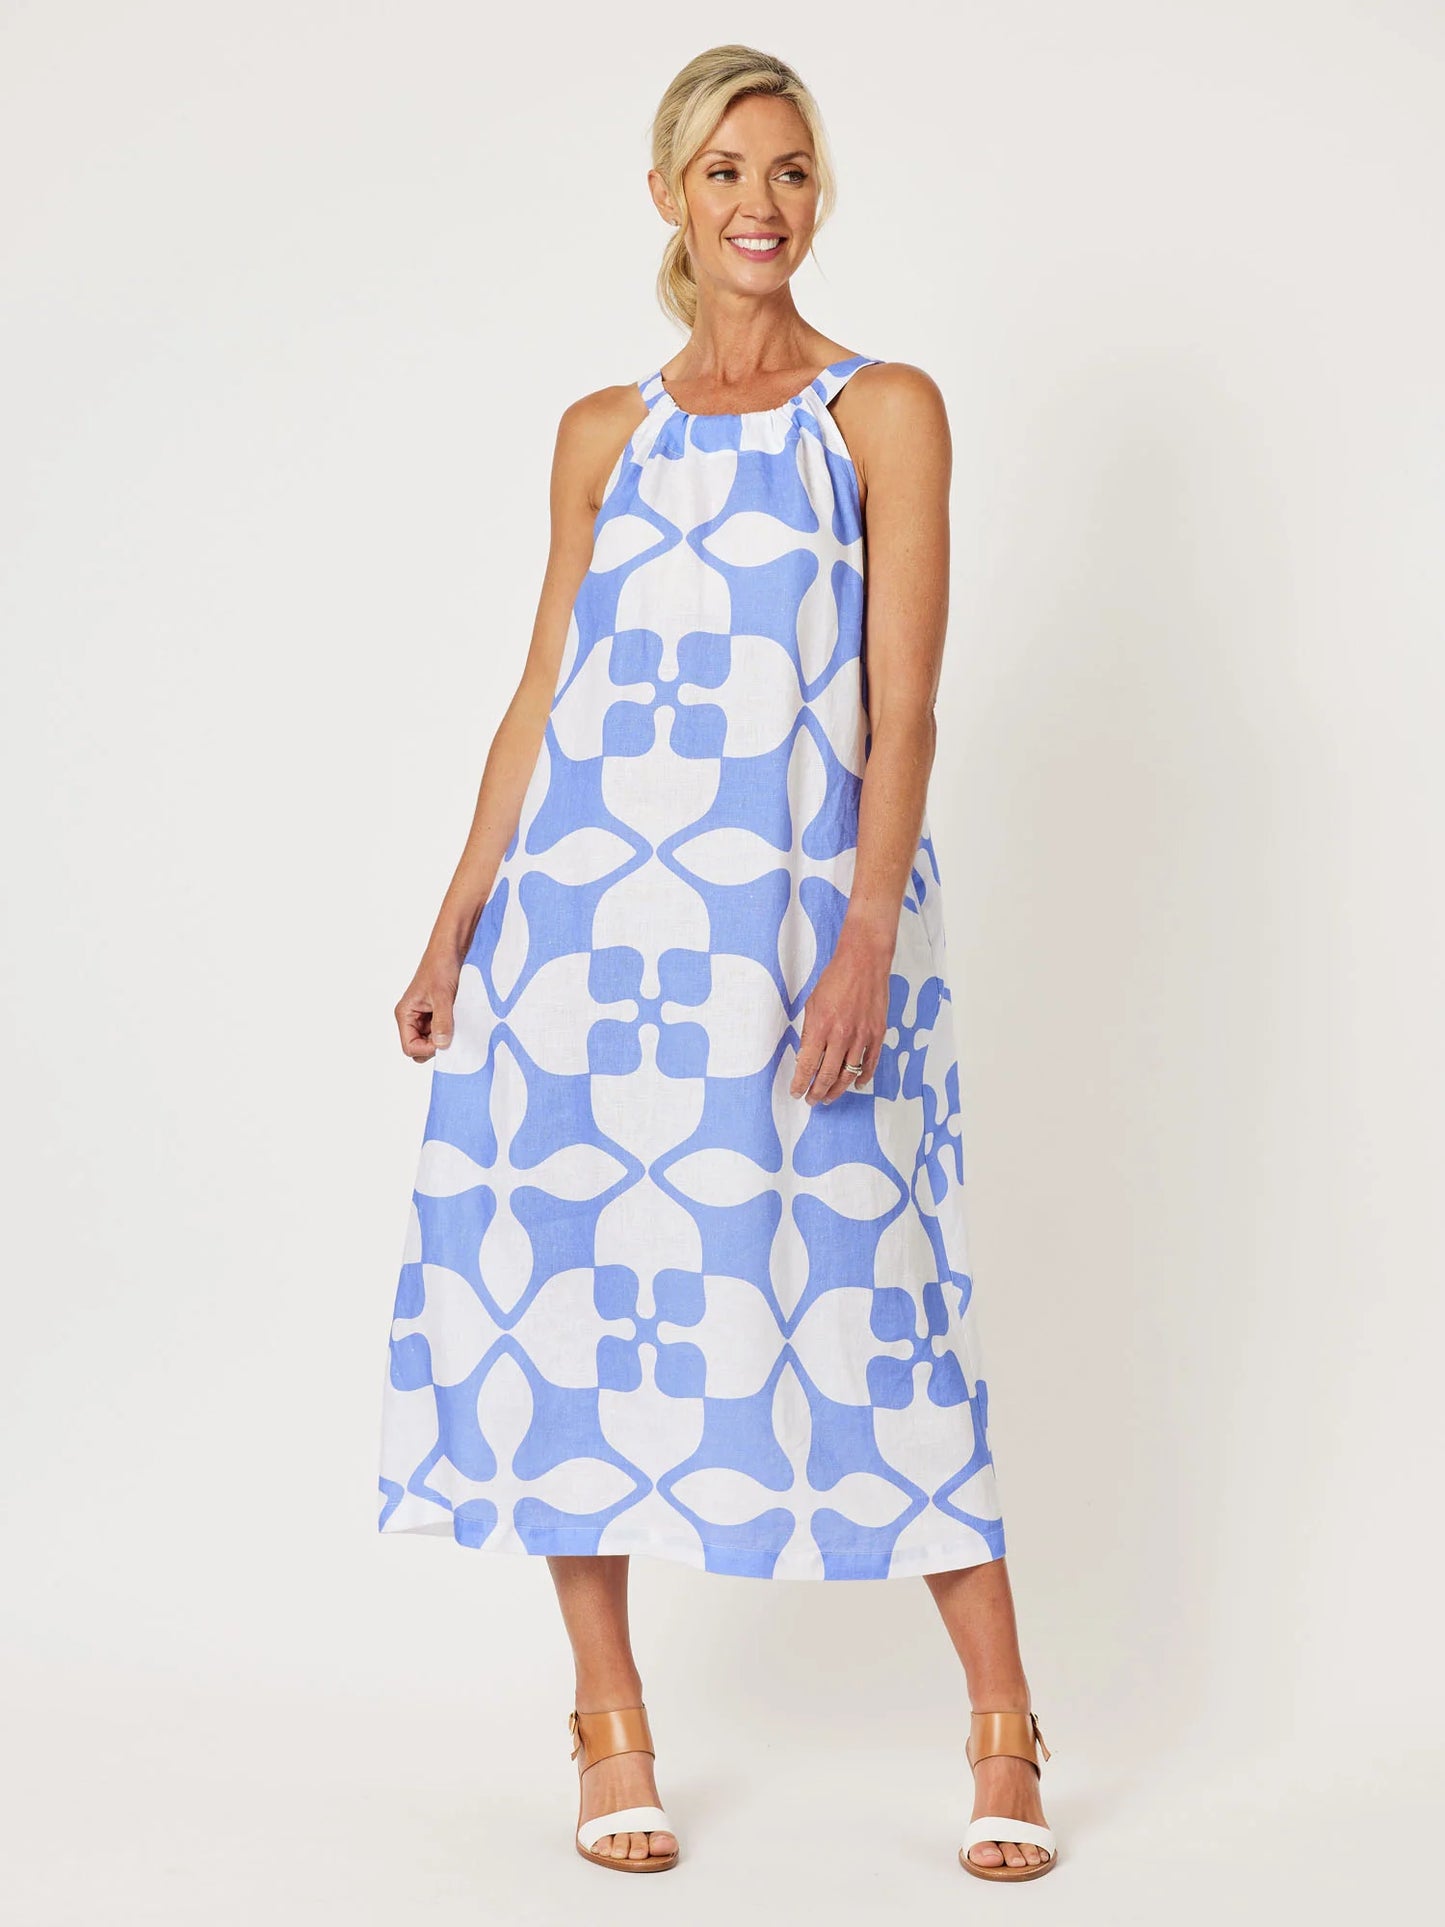 Pantile Print Dress - Blue